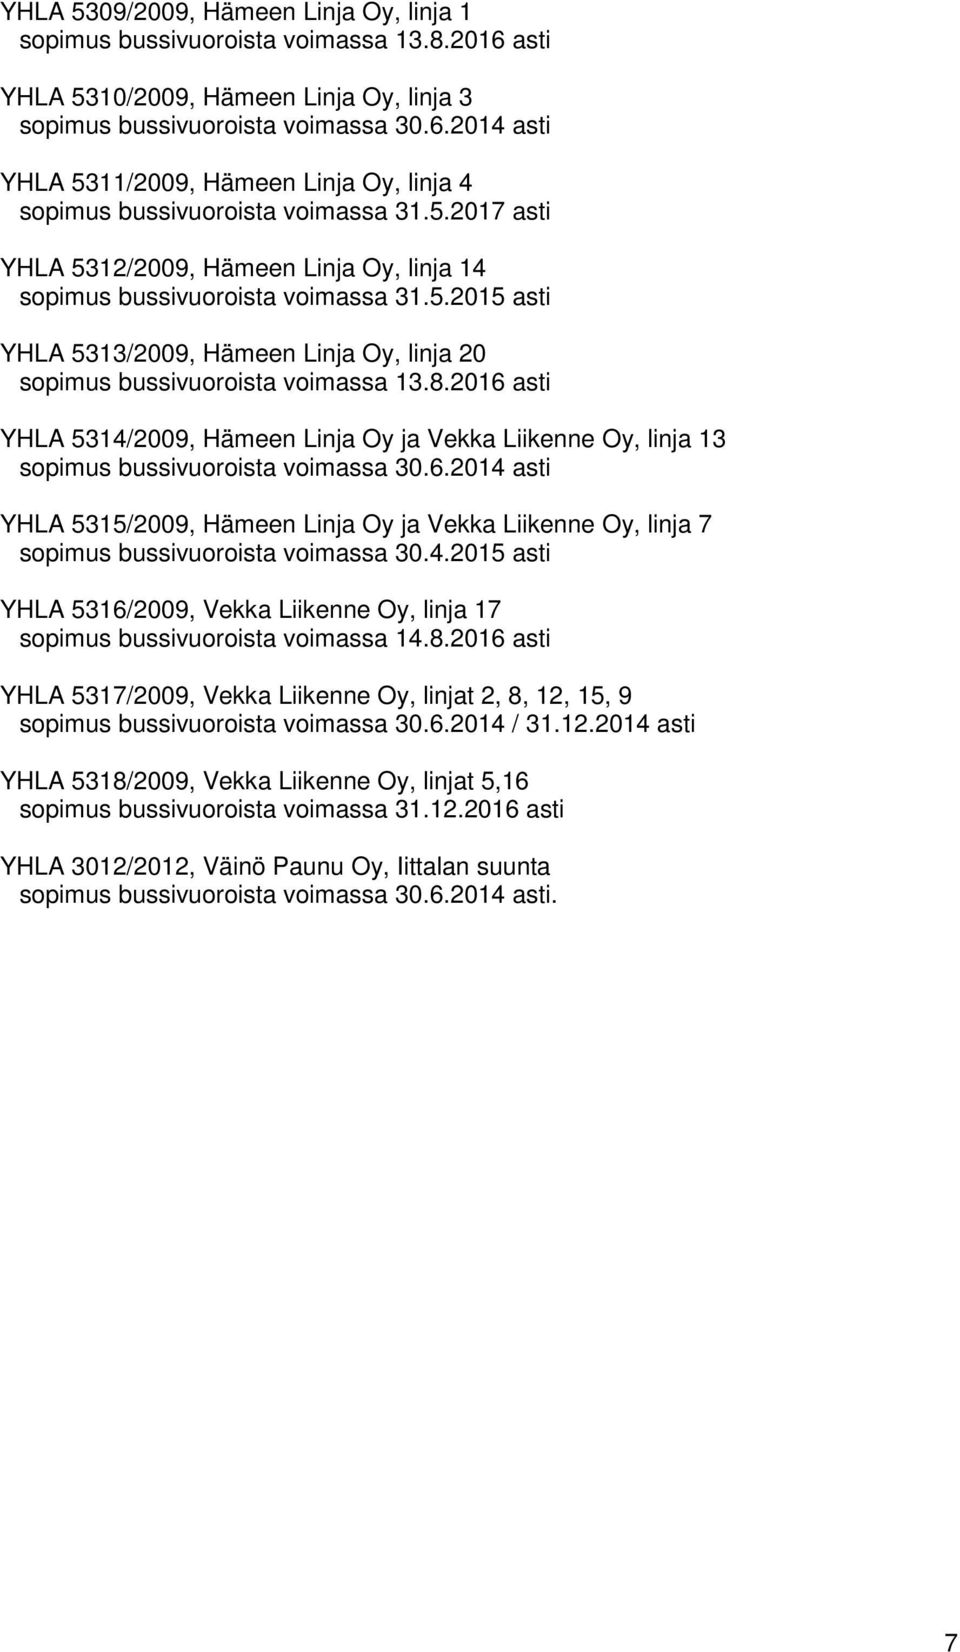 2016 asti YHLA 5314/2009, Hämeen Linja Oy ja Vekka Liikenne Oy, linja 13 sopimus bussivuoroista voimassa 30.6.2014 asti YHLA 5315/2009, Hämeen Linja Oy ja Vekka Liikenne Oy, linja 7 sopimus bussivuoroista voimassa 30.